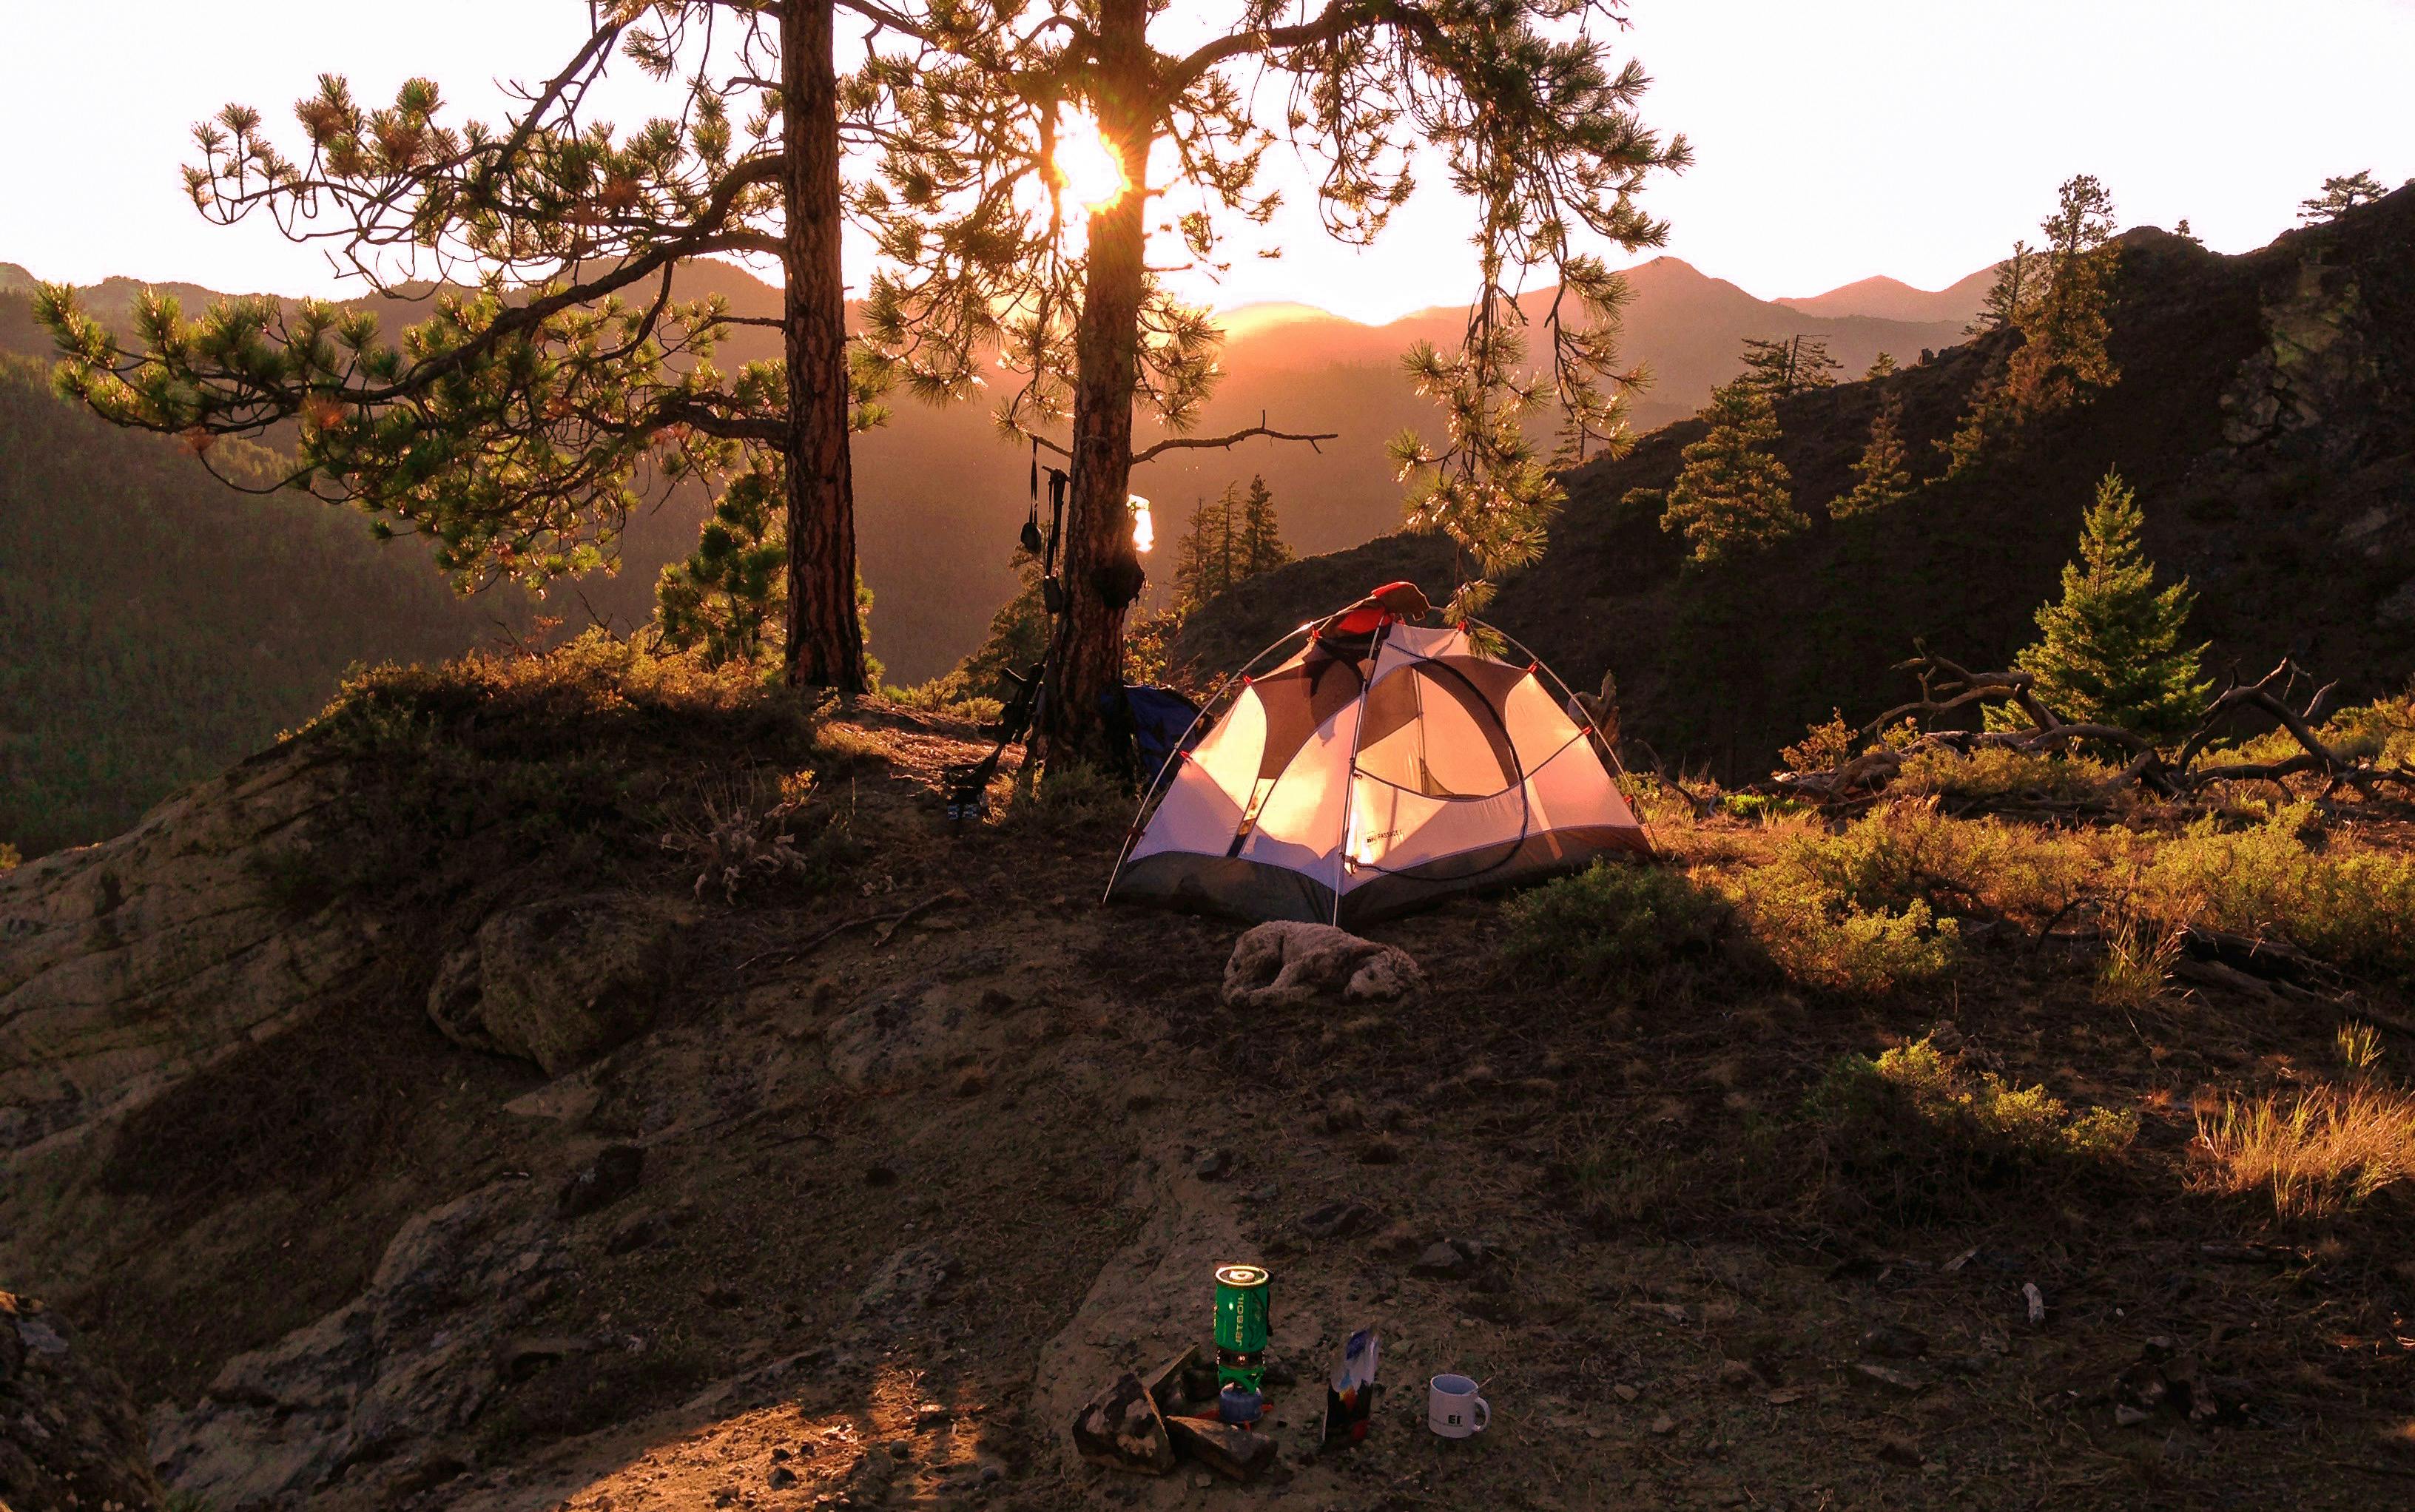 Camping Wallpaper Images  Free Download on Freepik